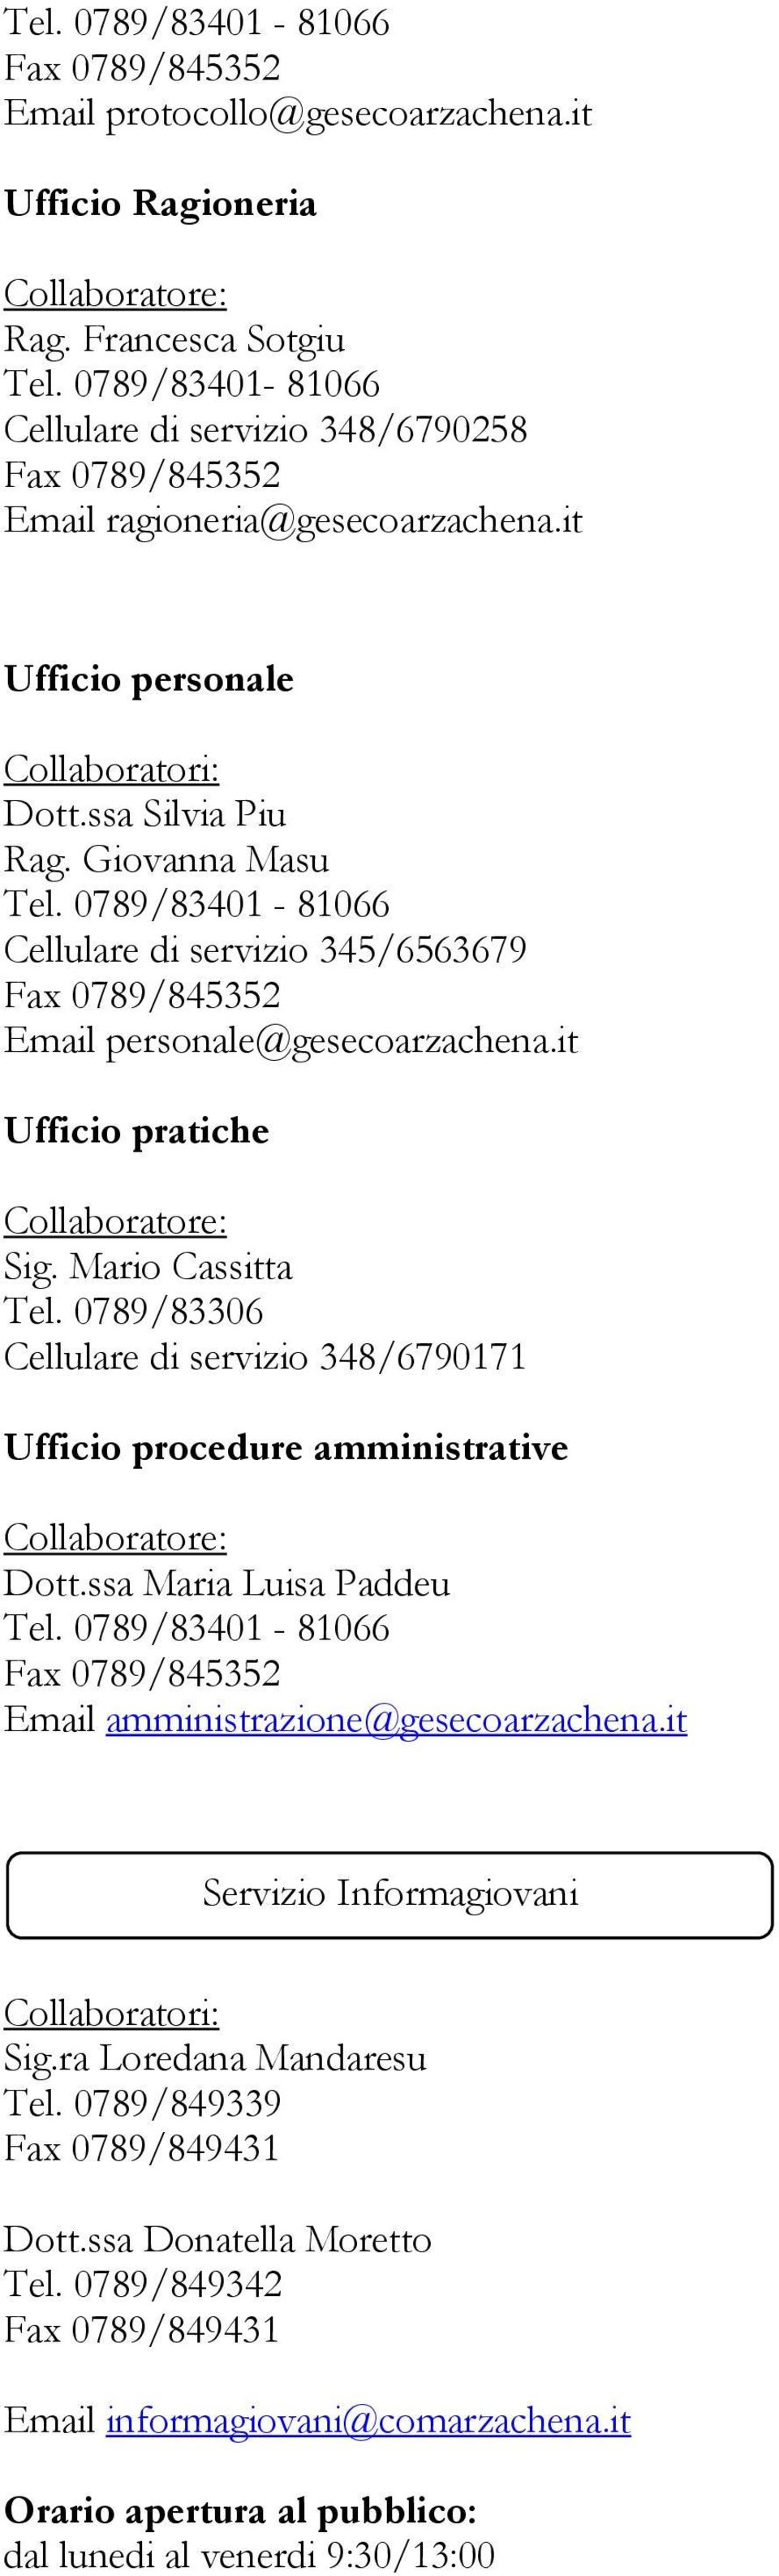 0789/83306 Cellulare di servizio 348/6790171 Ufficio procedure amministrative Dott.ssa Maria Luisa Paddeu Tel. 0789/83401-81066 Email amministrazione@gesecoarzachena.